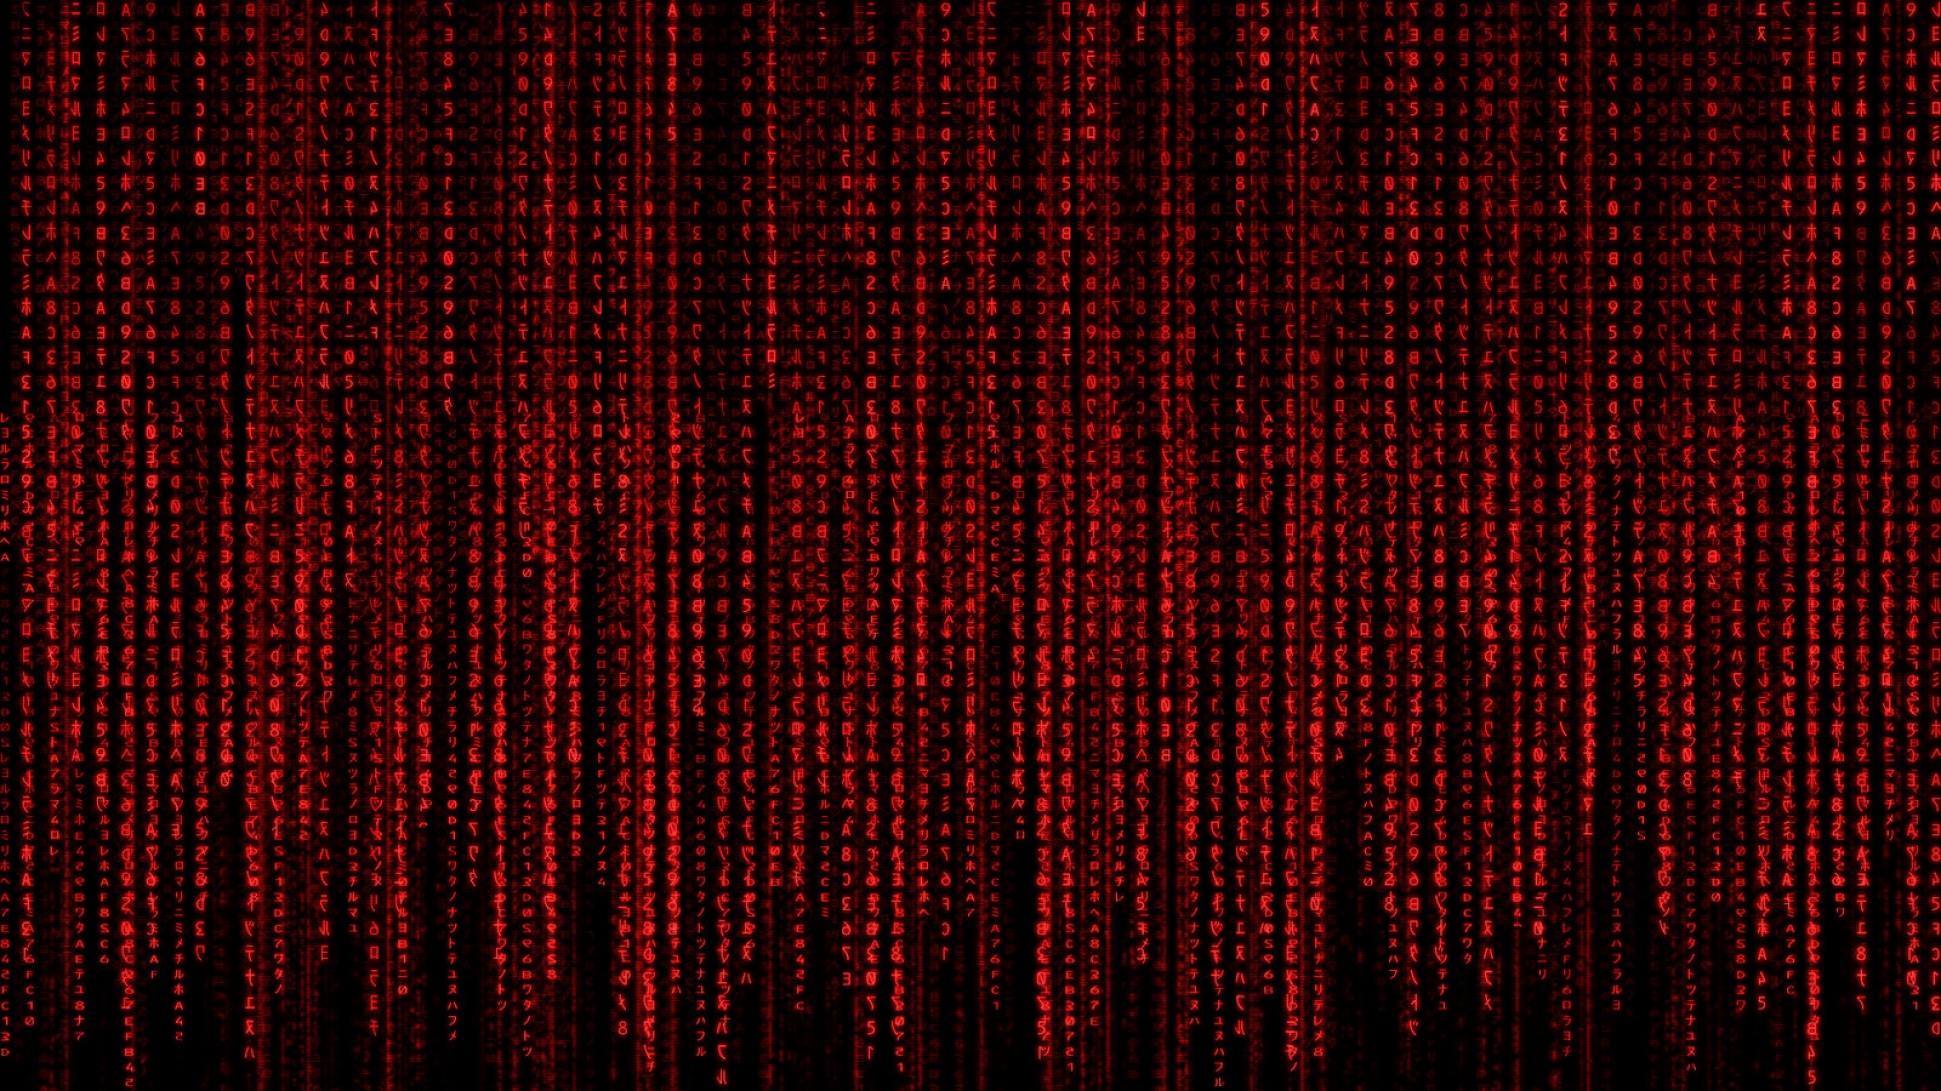 Red Matrix Code – bạn đã bao giờ tò mò về những đoạn mã máy tính bí ẩn phía sau màn hình máy tính chưa? Red Matrix Code chắc chắn sẽ làm bạn say đắm với những mã số đen đỏ hiện ra trên màn hình. Hãy cùng khám phá và đắm mình trong thế giới kỹ thuật số phiêu lưu này.